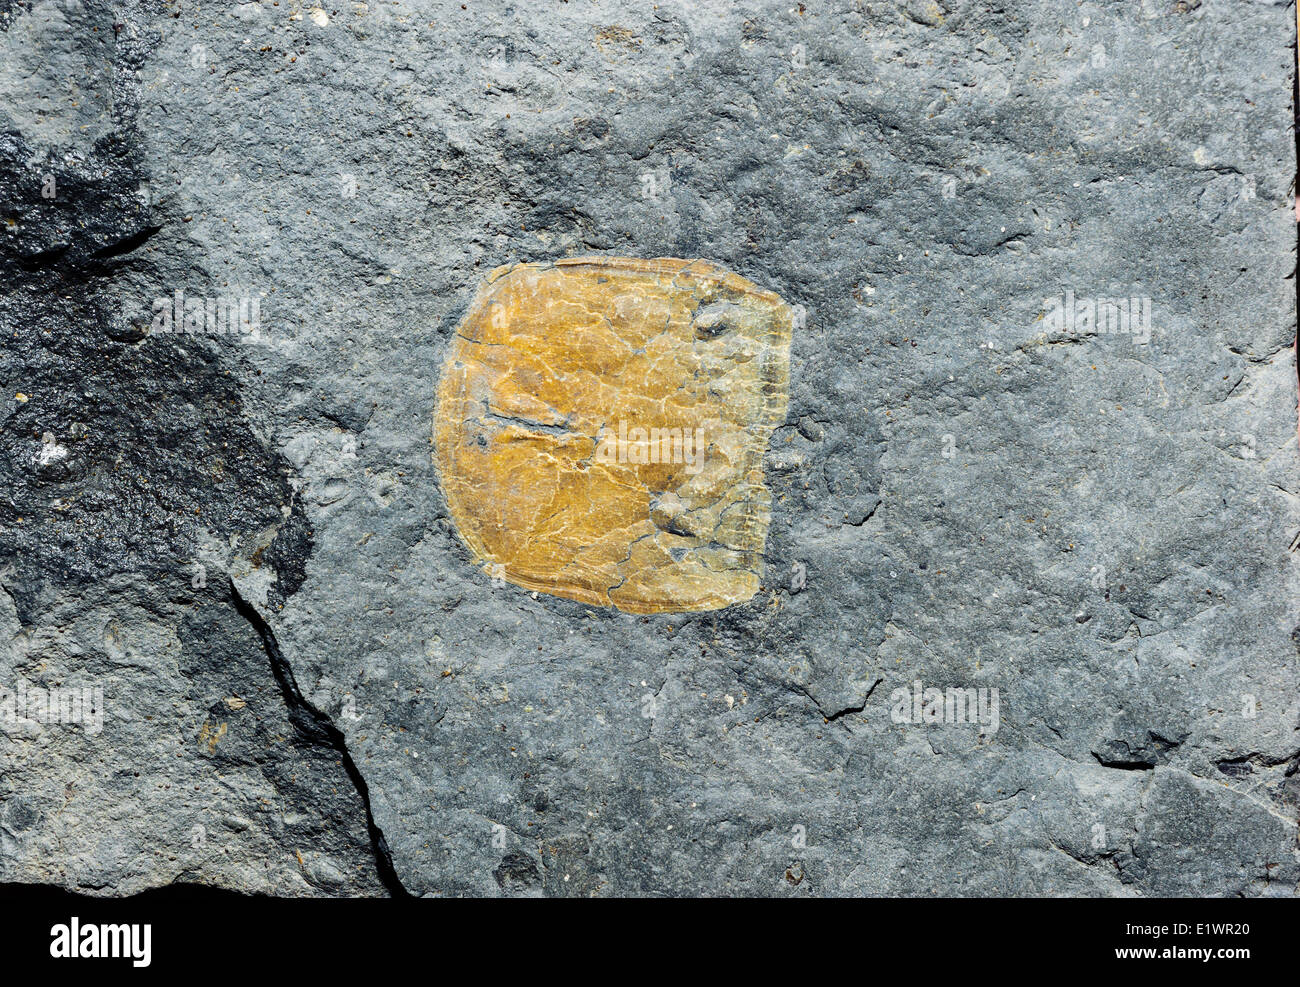 Les dents fossiles un la première des dipneustes (Sagenodus plicatus) recueillis par B.L.Hebert sur l'affichage à Joggins Fossil Centre. Fundy Bay Banque D'Images